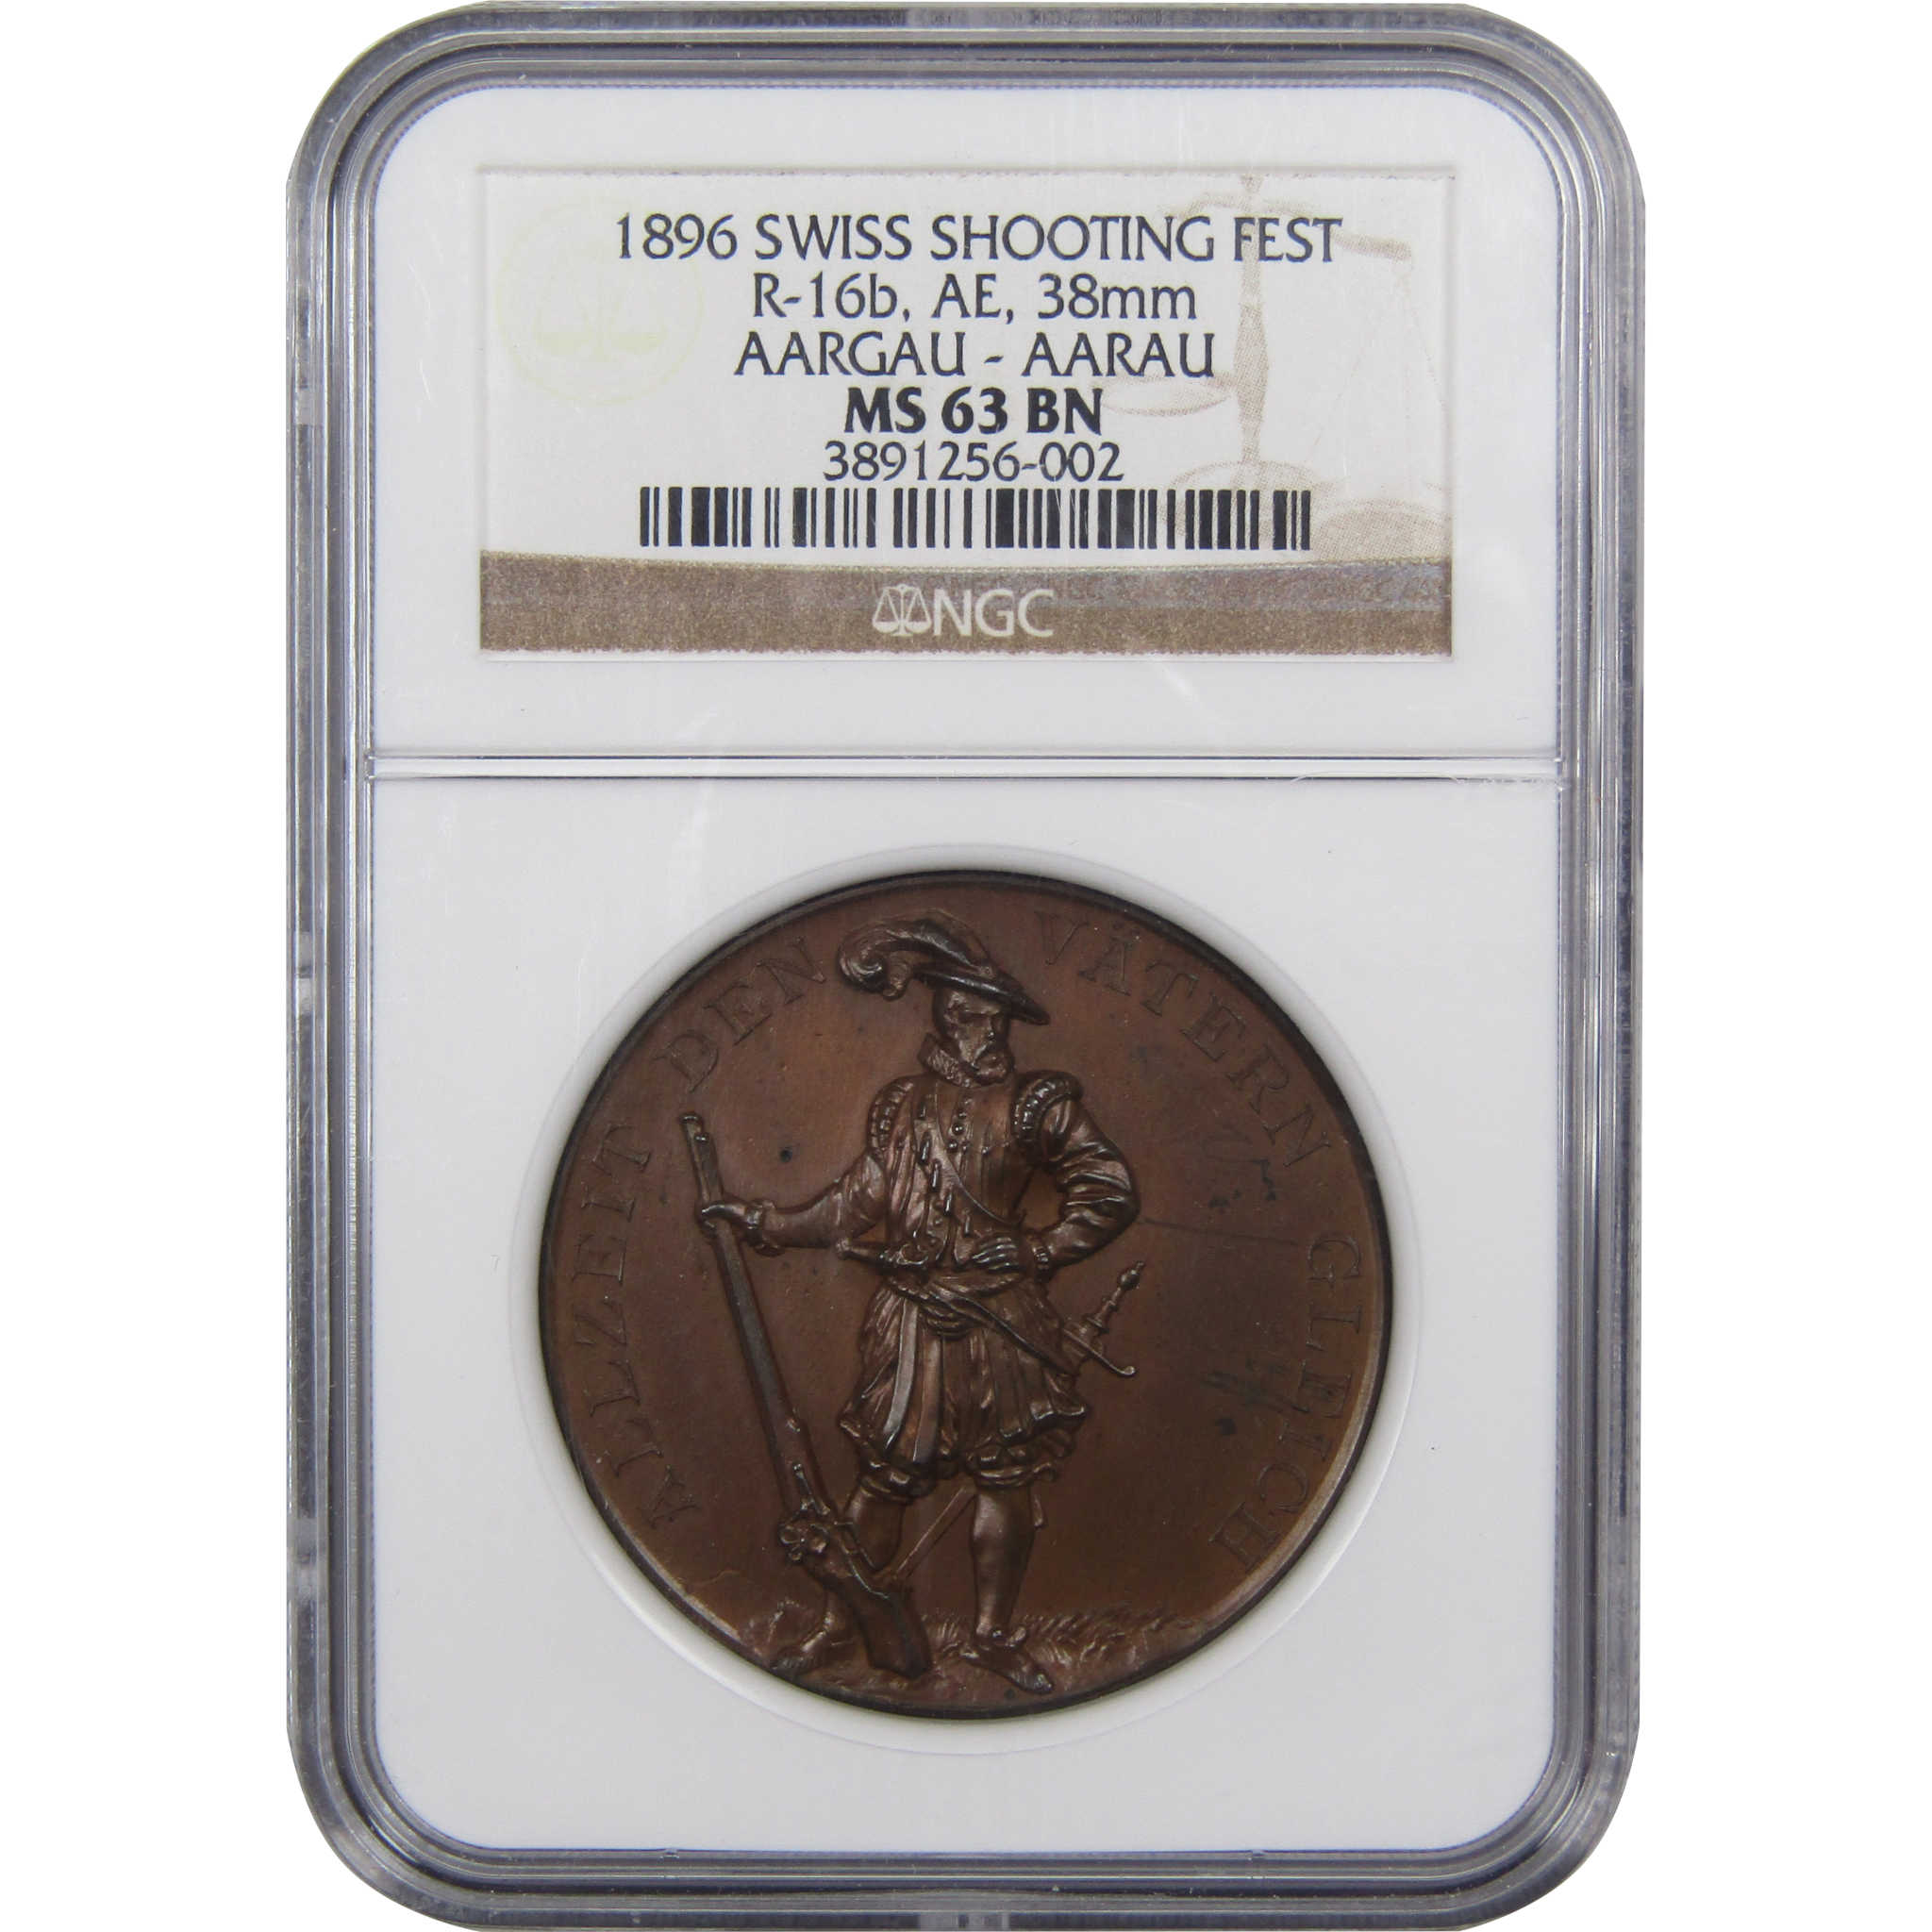 1896 Swiss Shooting Festival Medal R-16b AE 38mm MS 63 NGC SKU:I1466